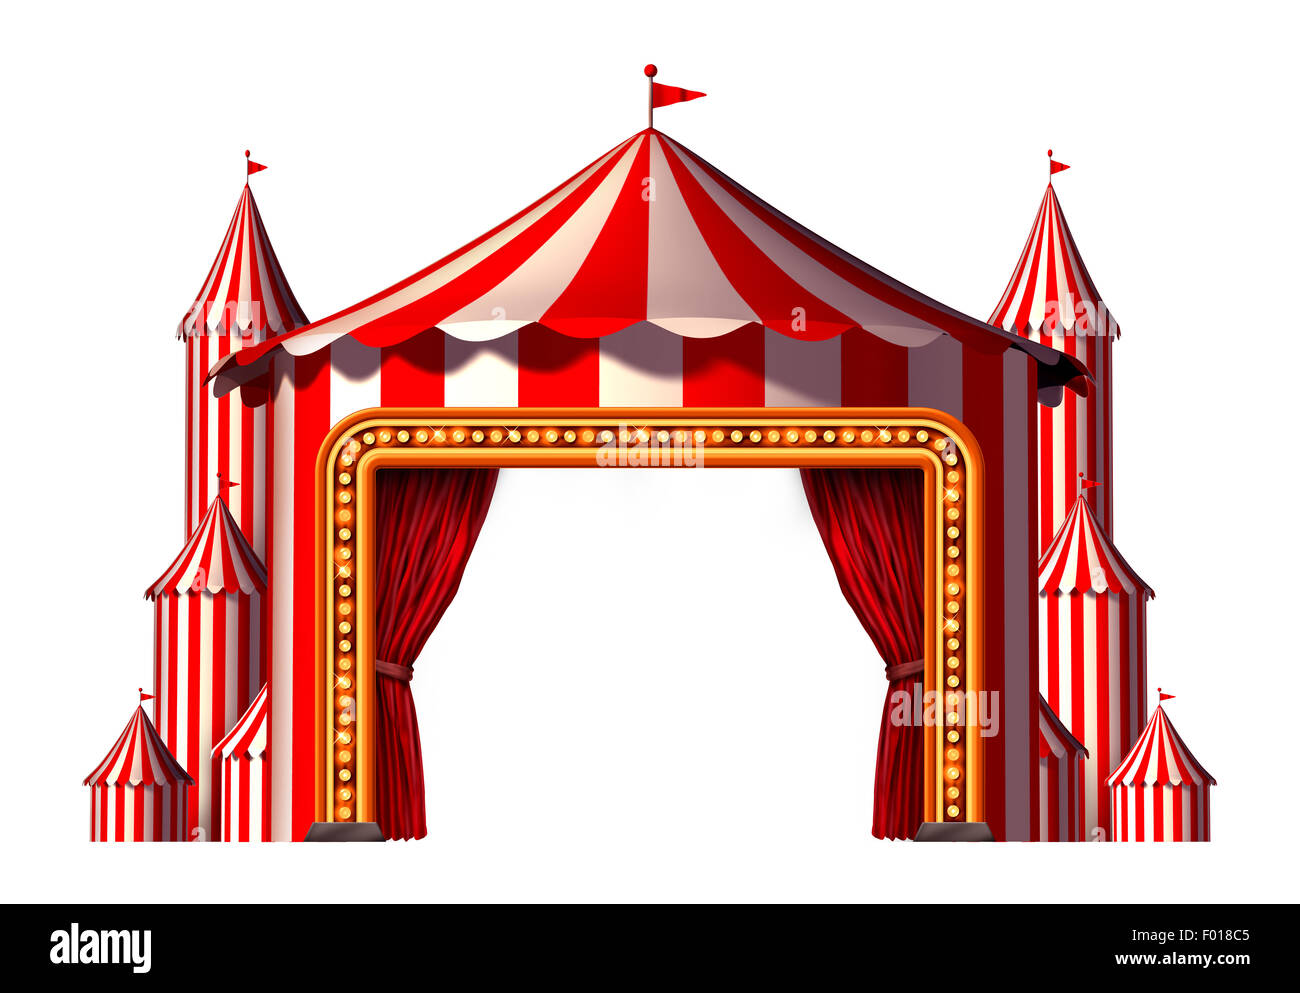 Espace cirque tente étape élément de conception, comme un groupe de big top carnival tentes avec un rideau rouge entrée d'ouverture comme un divertissement amusant icône d'un festival de théâtre partie isolé sur un fond blanc. Banque D'Images